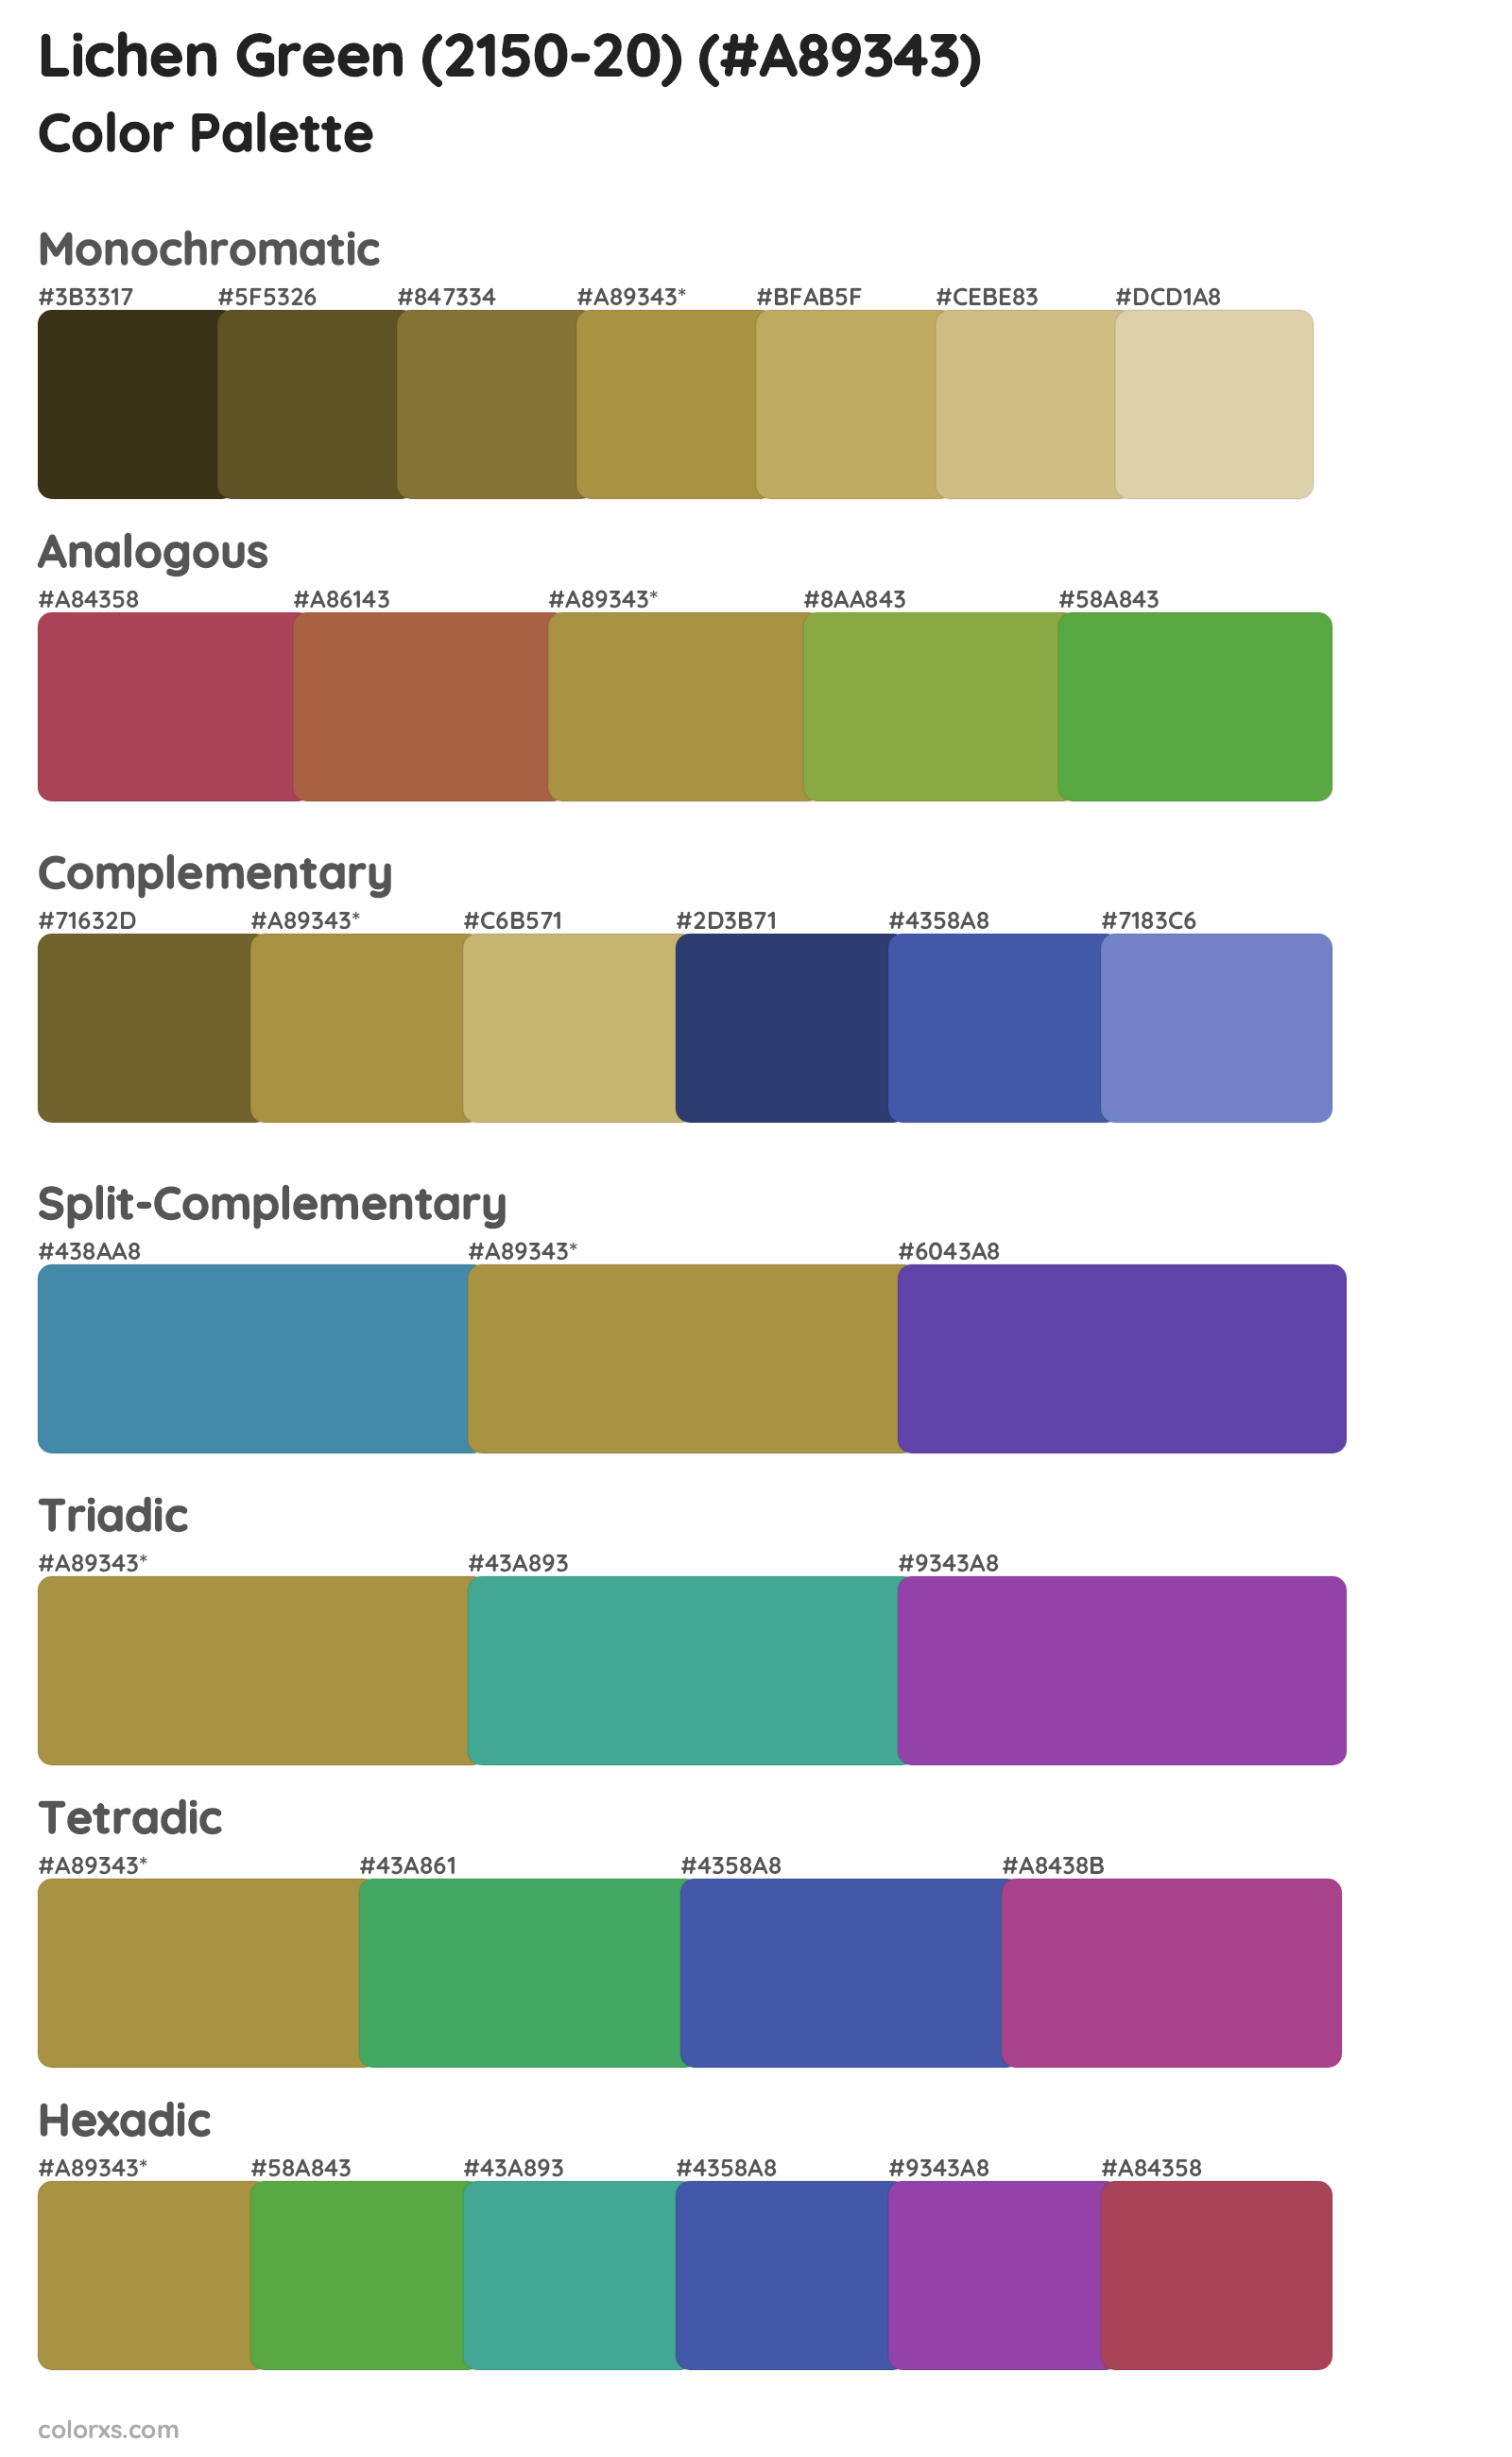 Lichen Green (2150-20) Color Scheme Palettes